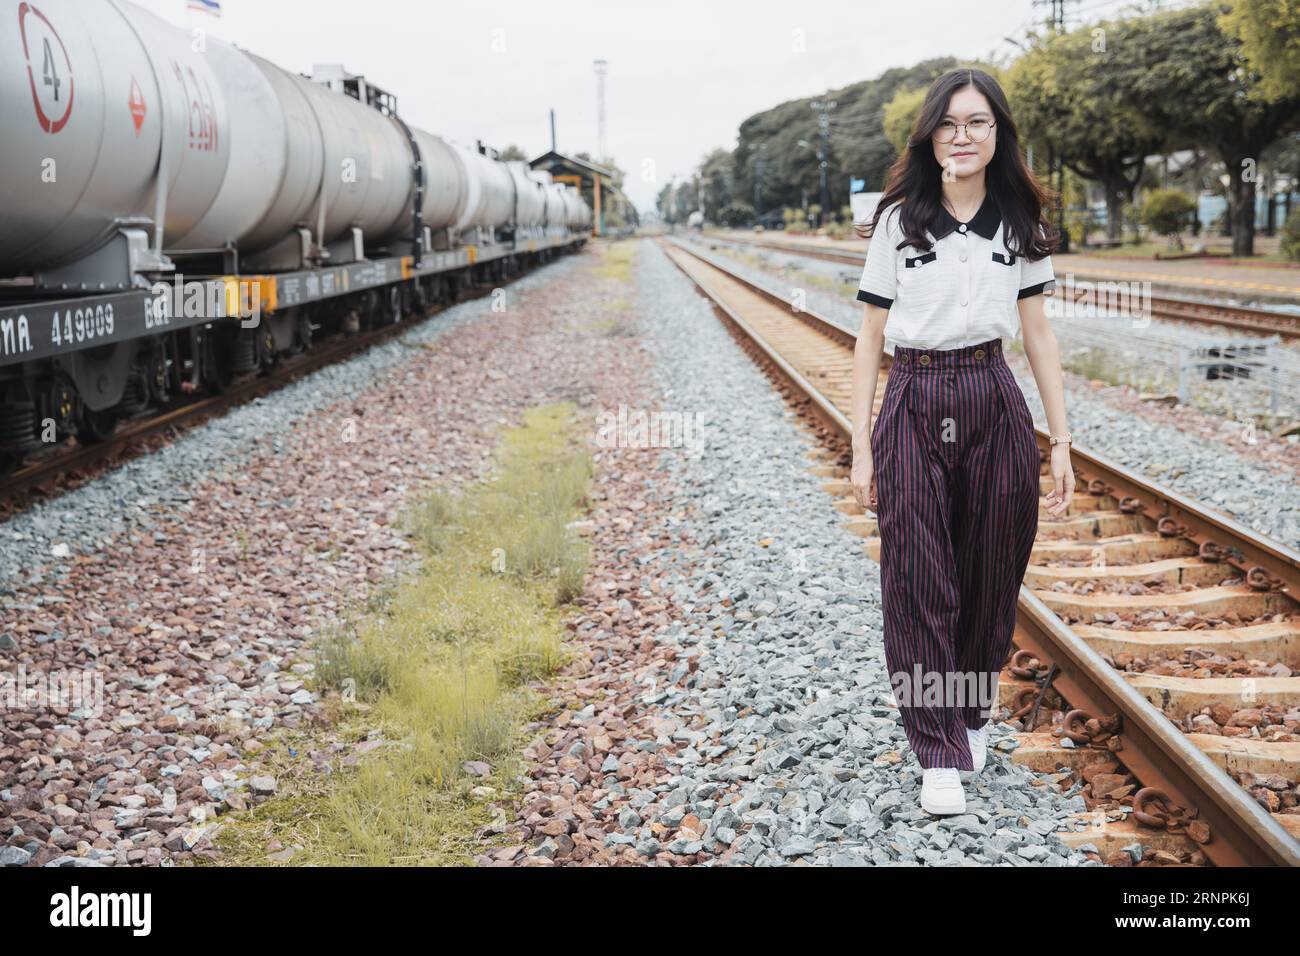 ritratto donna asiatica felice sulla stazione ferroviaria industria delle locomotive tempo libero rilassarsi immagine sorriso Foto Stock